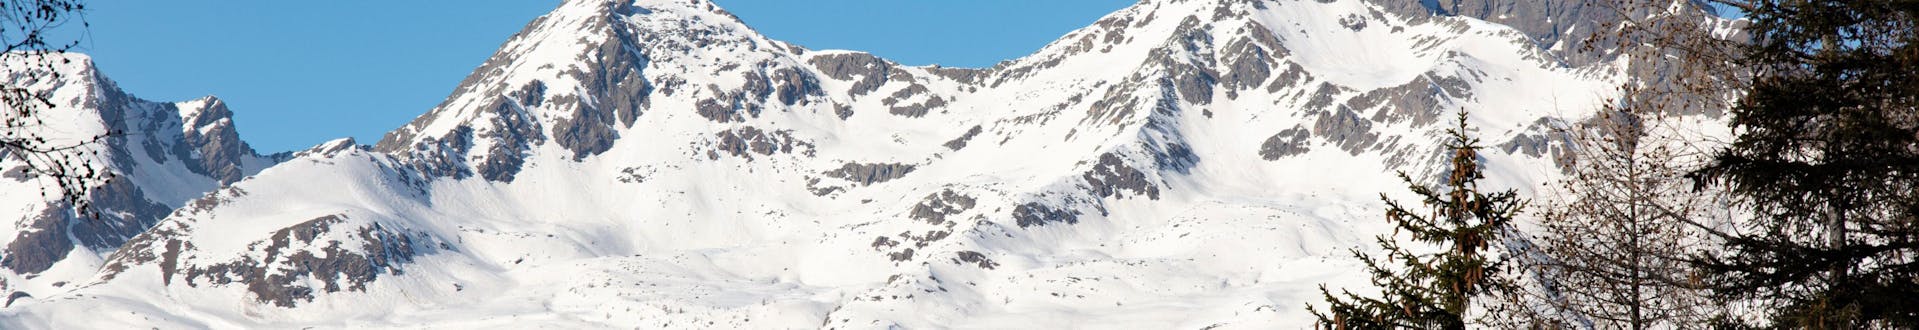 Paesaggio invernale vicino a Daolasa - Commezzadura dove è possibile prenotare lezioni di sci.